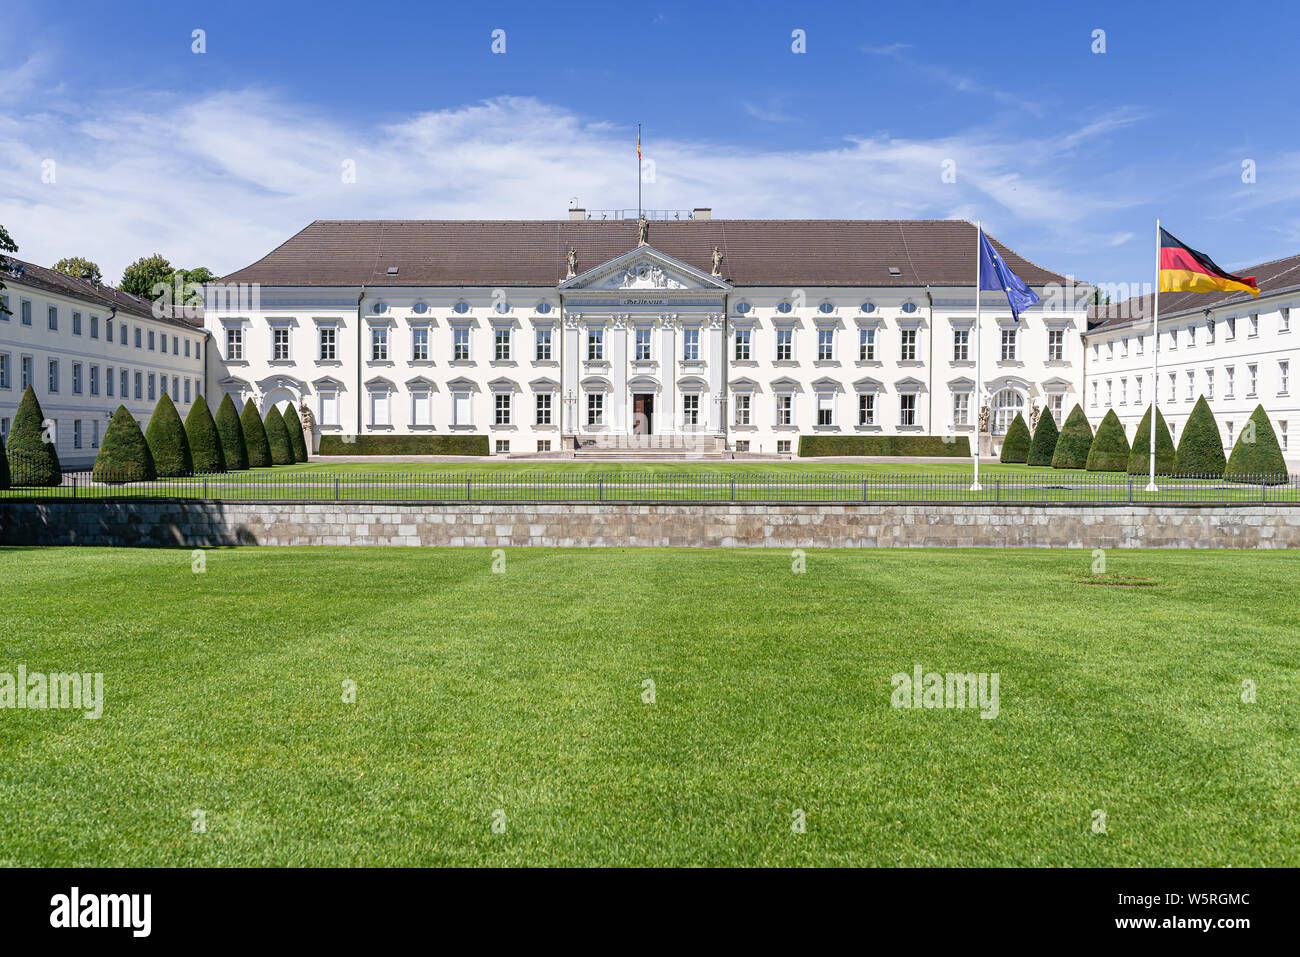 2019-07-24 Berlin, Germania: il Bellevue Palace, Schloss Bellevue, residenza ufficiale del Presidente Federale della Repubblica federale di Germania Foto Stock